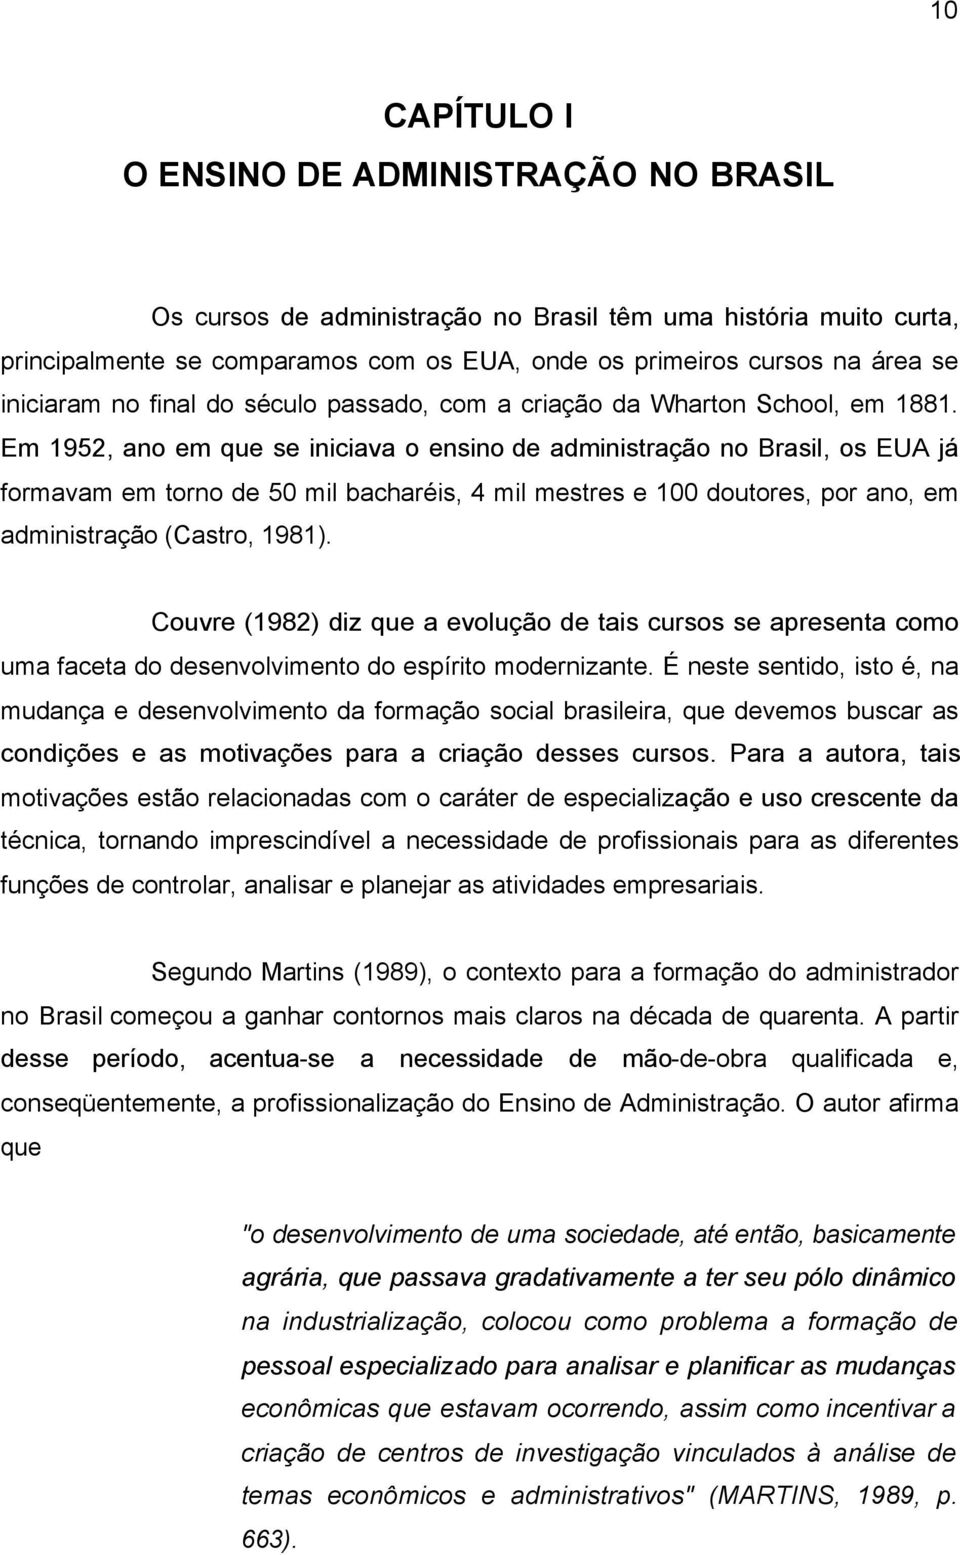 Em 1952, ano em que se iniciava o ensino de administração no Brasil, os EUA já formavam em torno de 50 mil bacharéis, 4 mil mestres e 100 doutores, por ano, em administração (Castro, 1981).